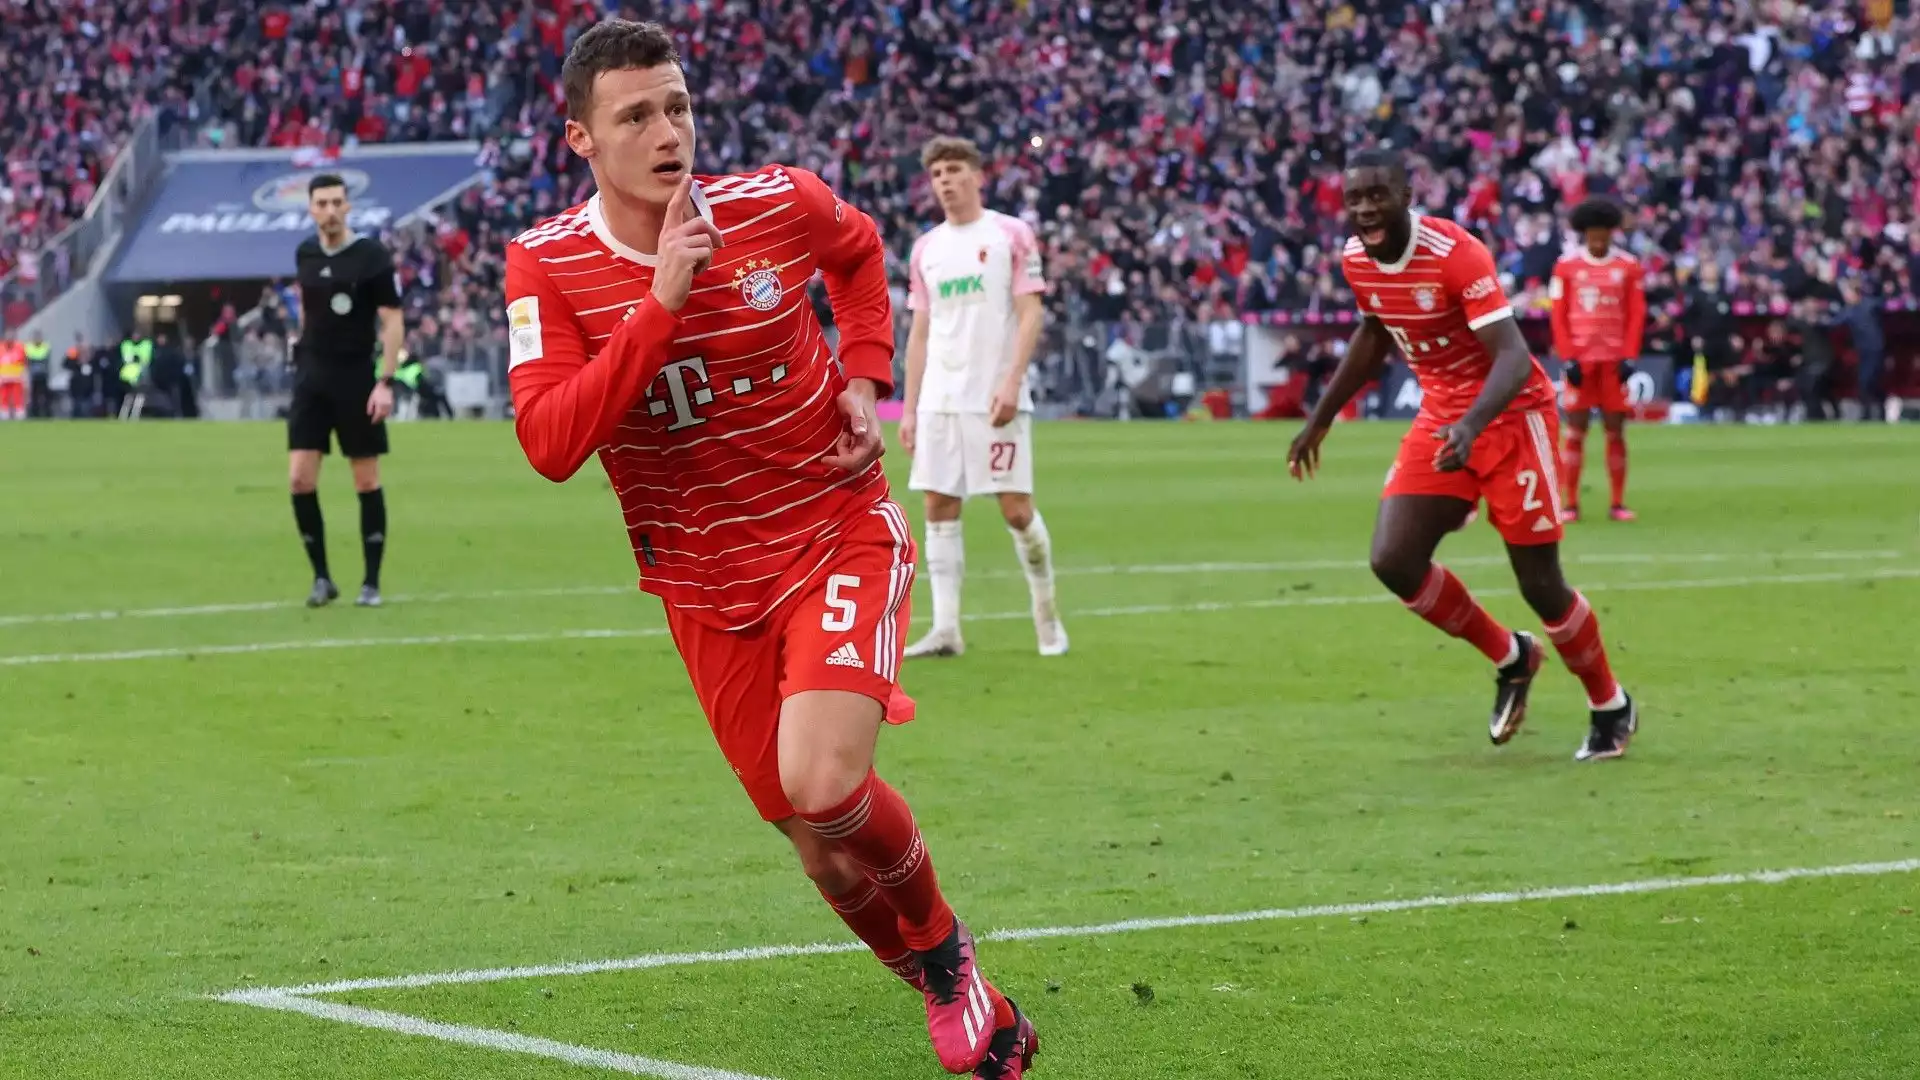 Essendo obbligati a venderlo, il Bayern Monaco potrebbe accettare offerte inferiori al reale valore del calciatore